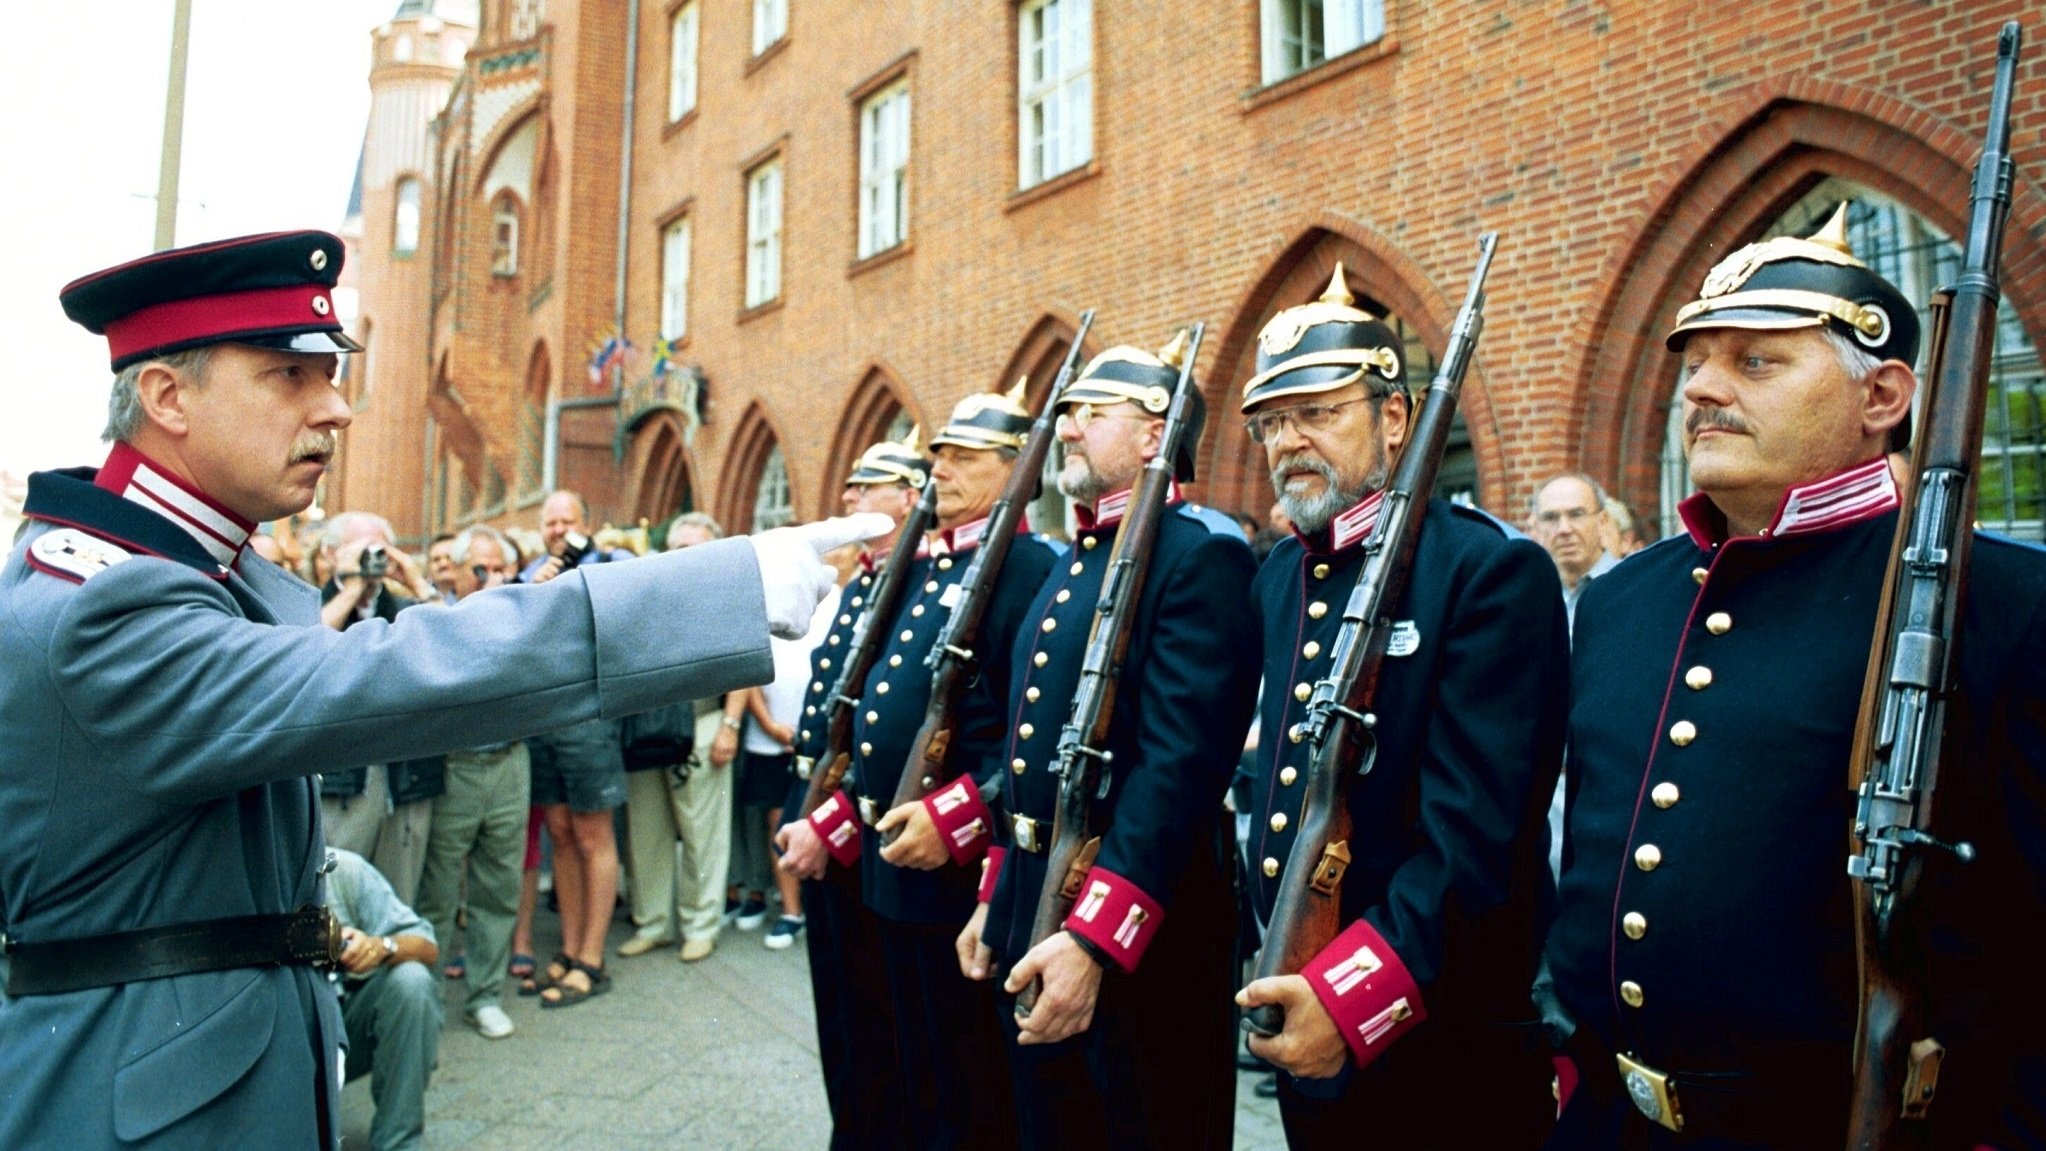 10.05.2000, Berlin / Köpenick: Hauptmann von Köpenick mit seiner Garde vor dem Rathaus.